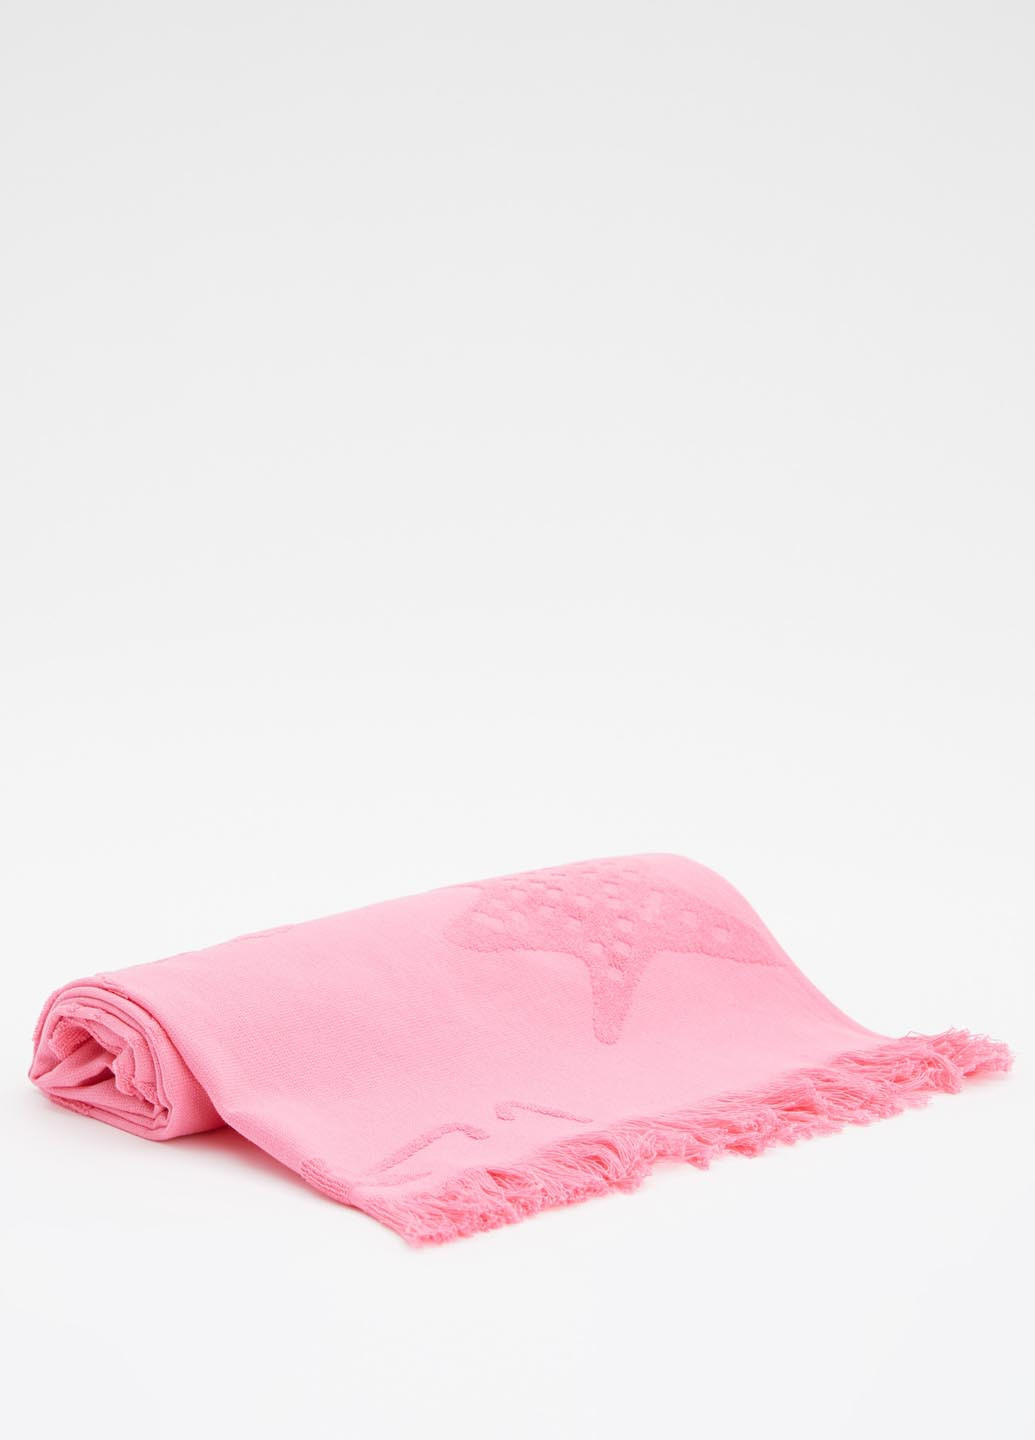 DeFacto полотенце, 50*100 розовый производство - Турция